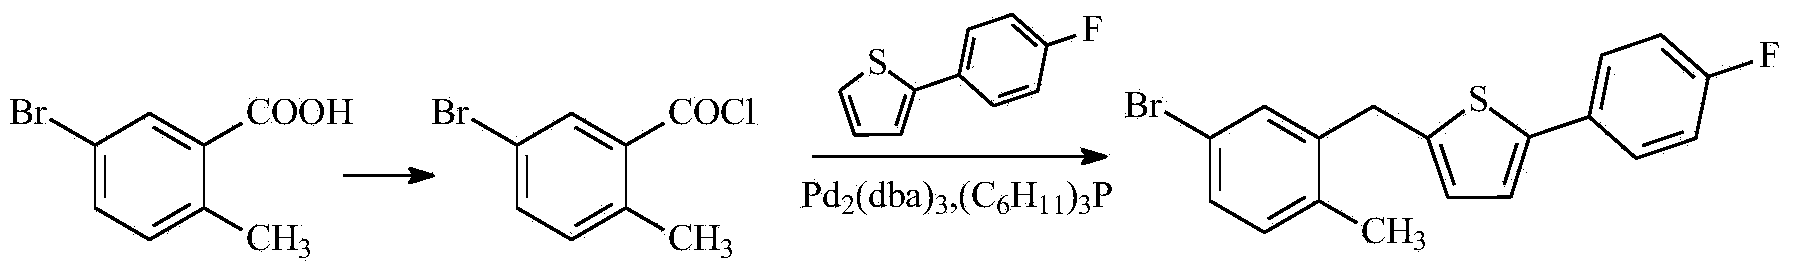 Preparation method of 2-(4-fluorophenyl)-5-[(5-bromo-2-methylphenyl) methyl] thiophene